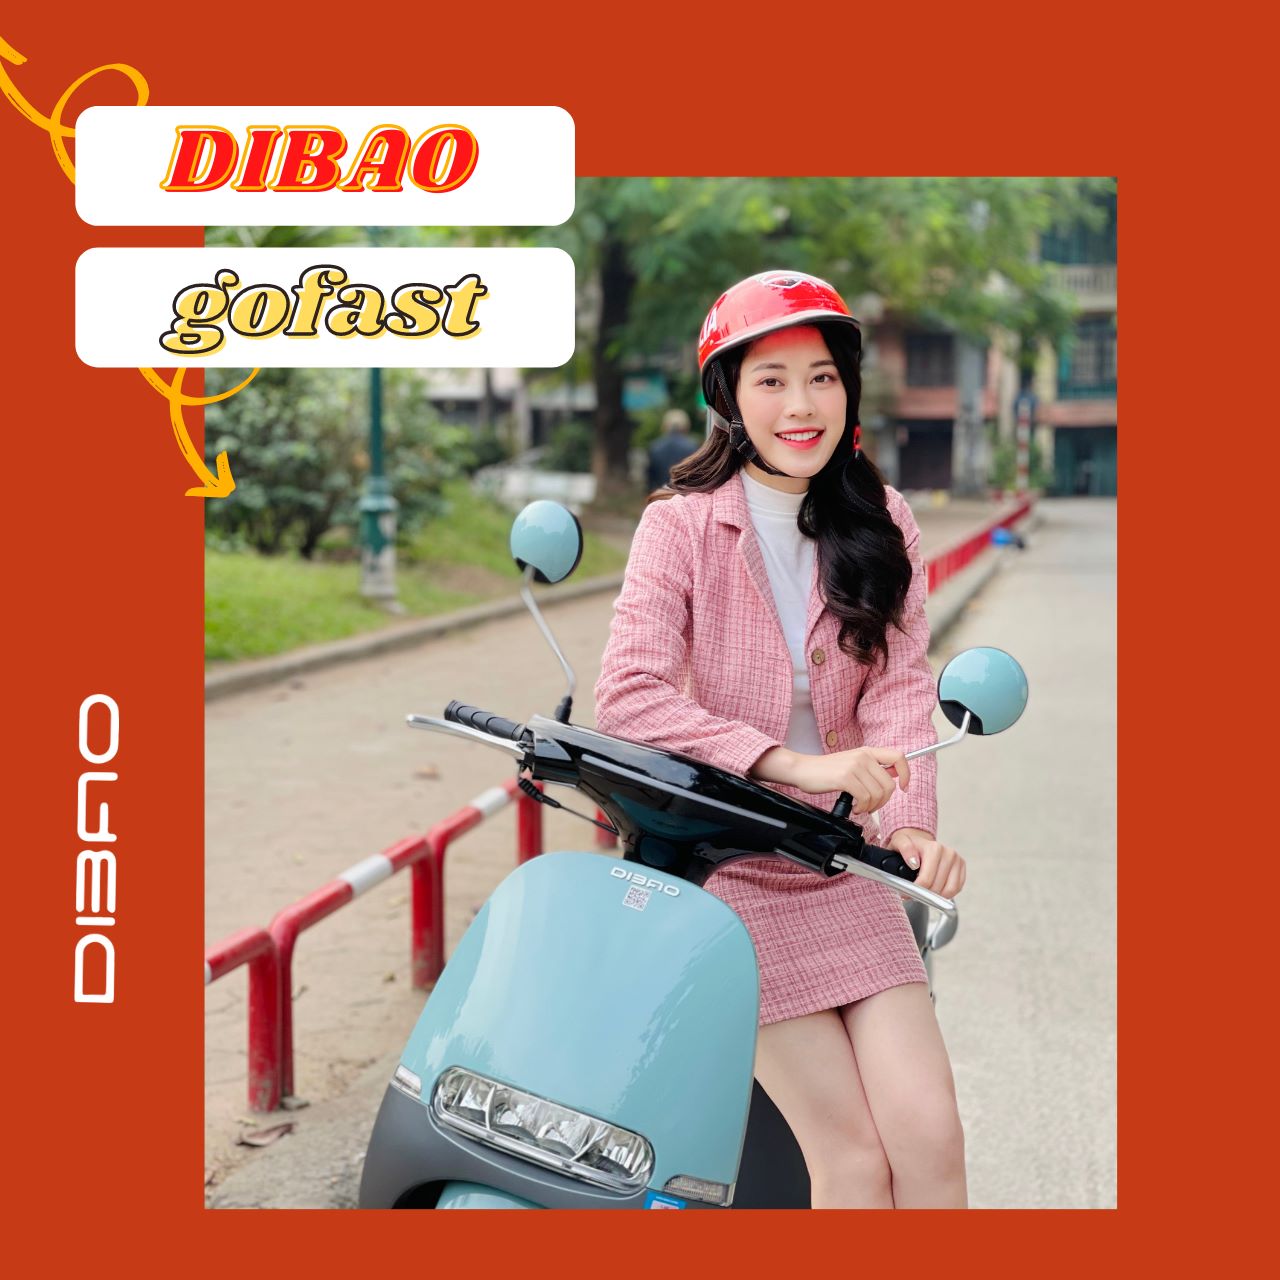 xe máy 50cc Dibao Gofast